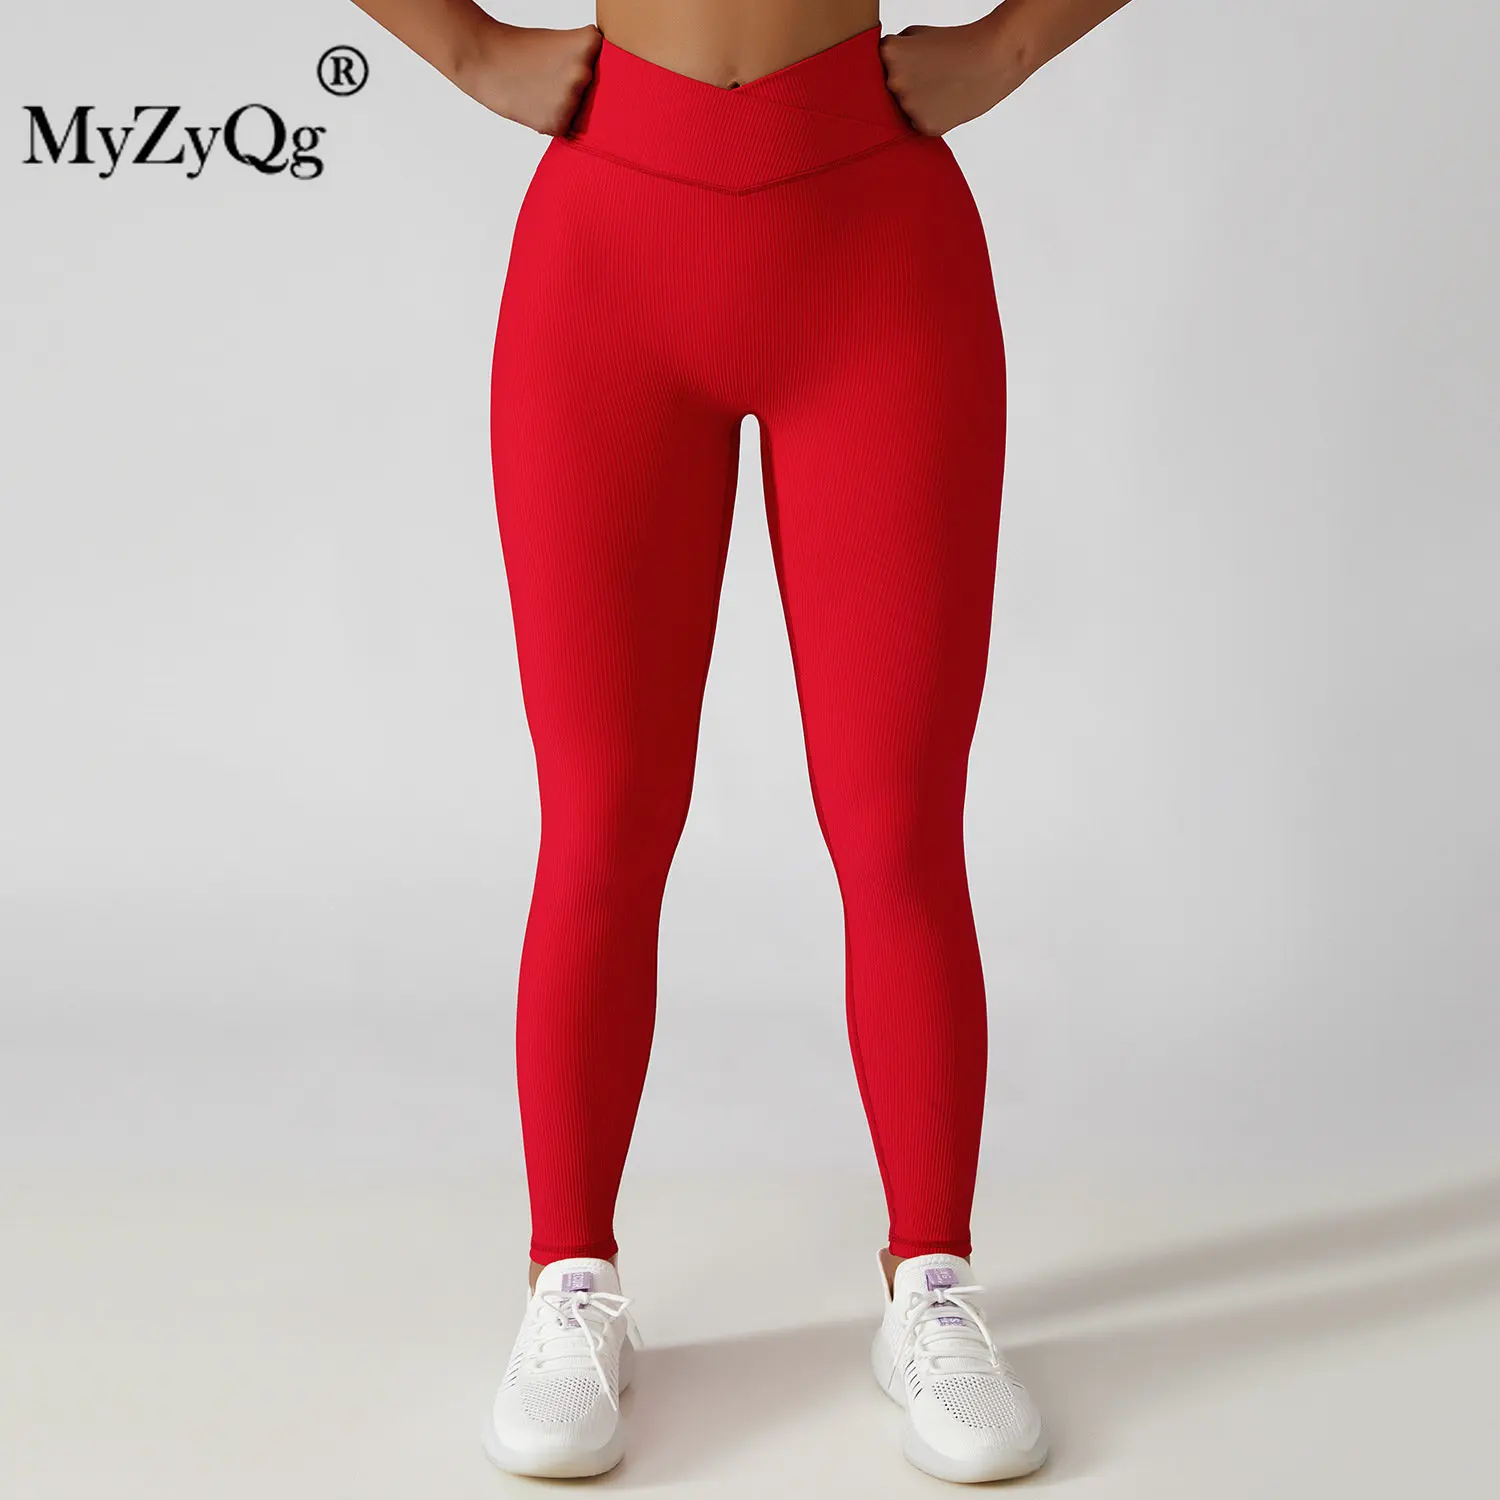 MyZyQg Yaz Kadın Hızlı Kuru Yüksek Yoğunluklu Yoga Pantolon Spor Sıkı Eğitim Koşu Tayt Spor Giyim Spor Egzersiz Dip